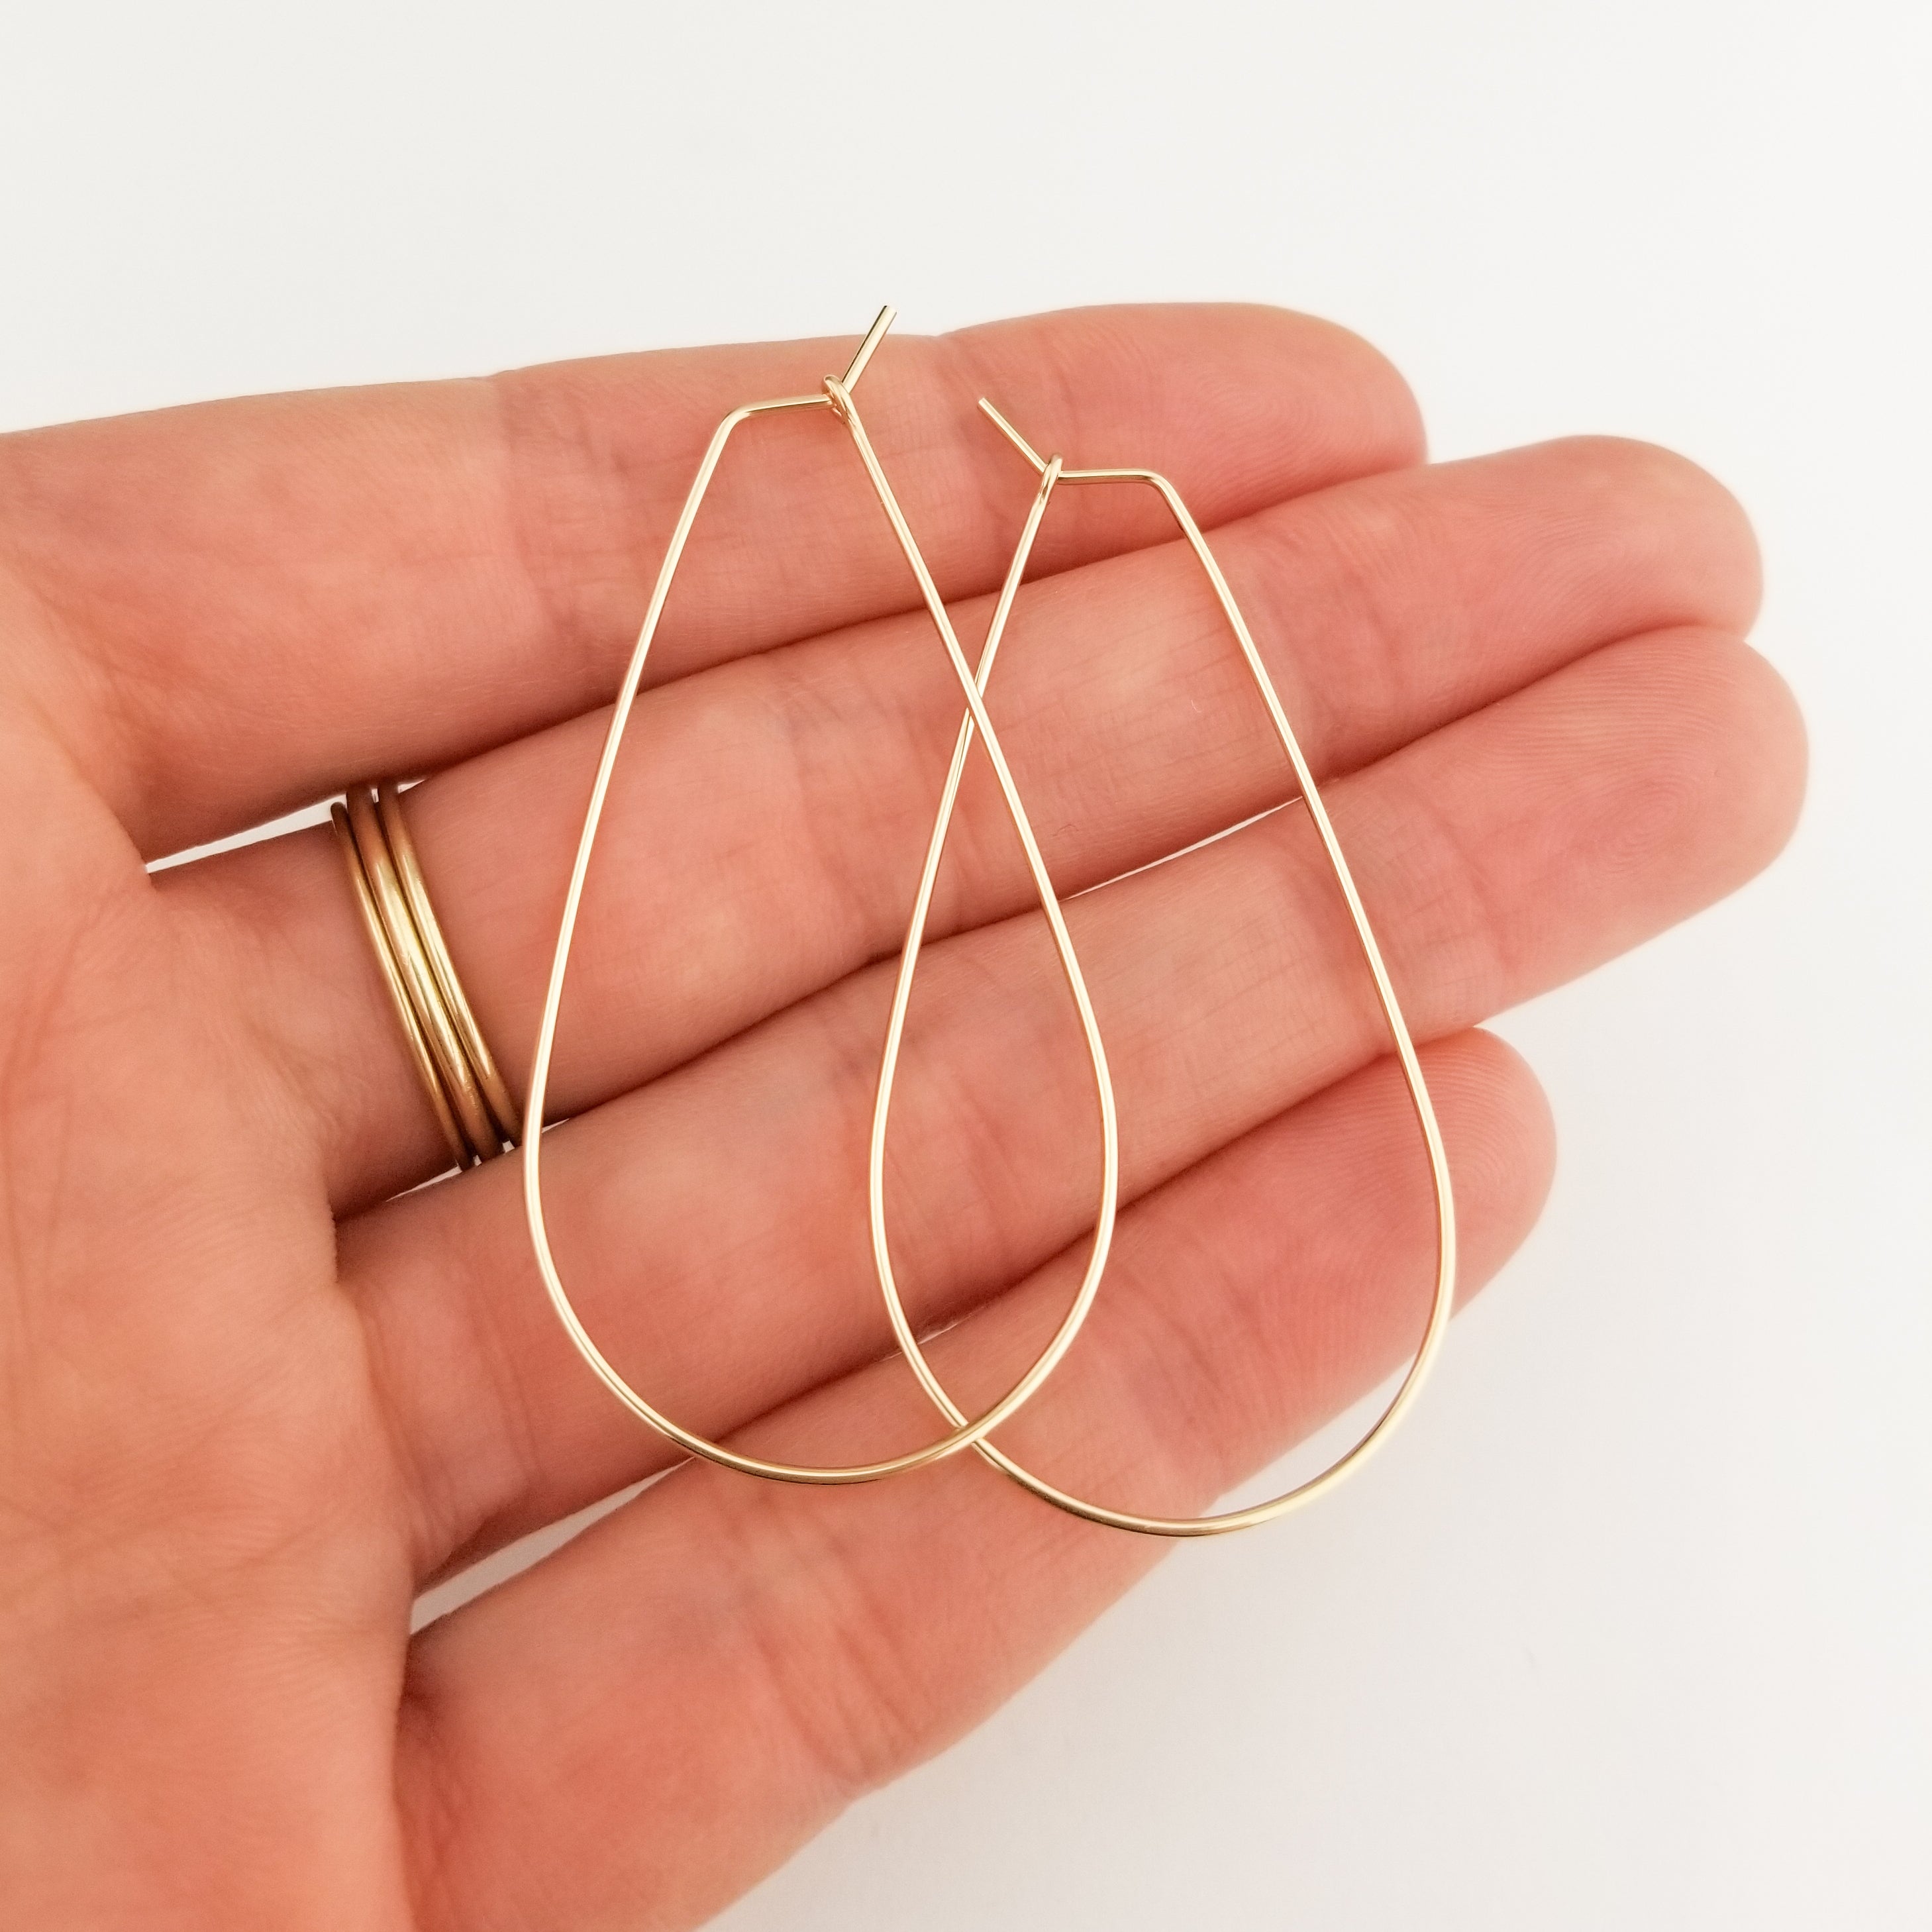 Simple 14K Gold Drop Earrings - Gold String Earrings